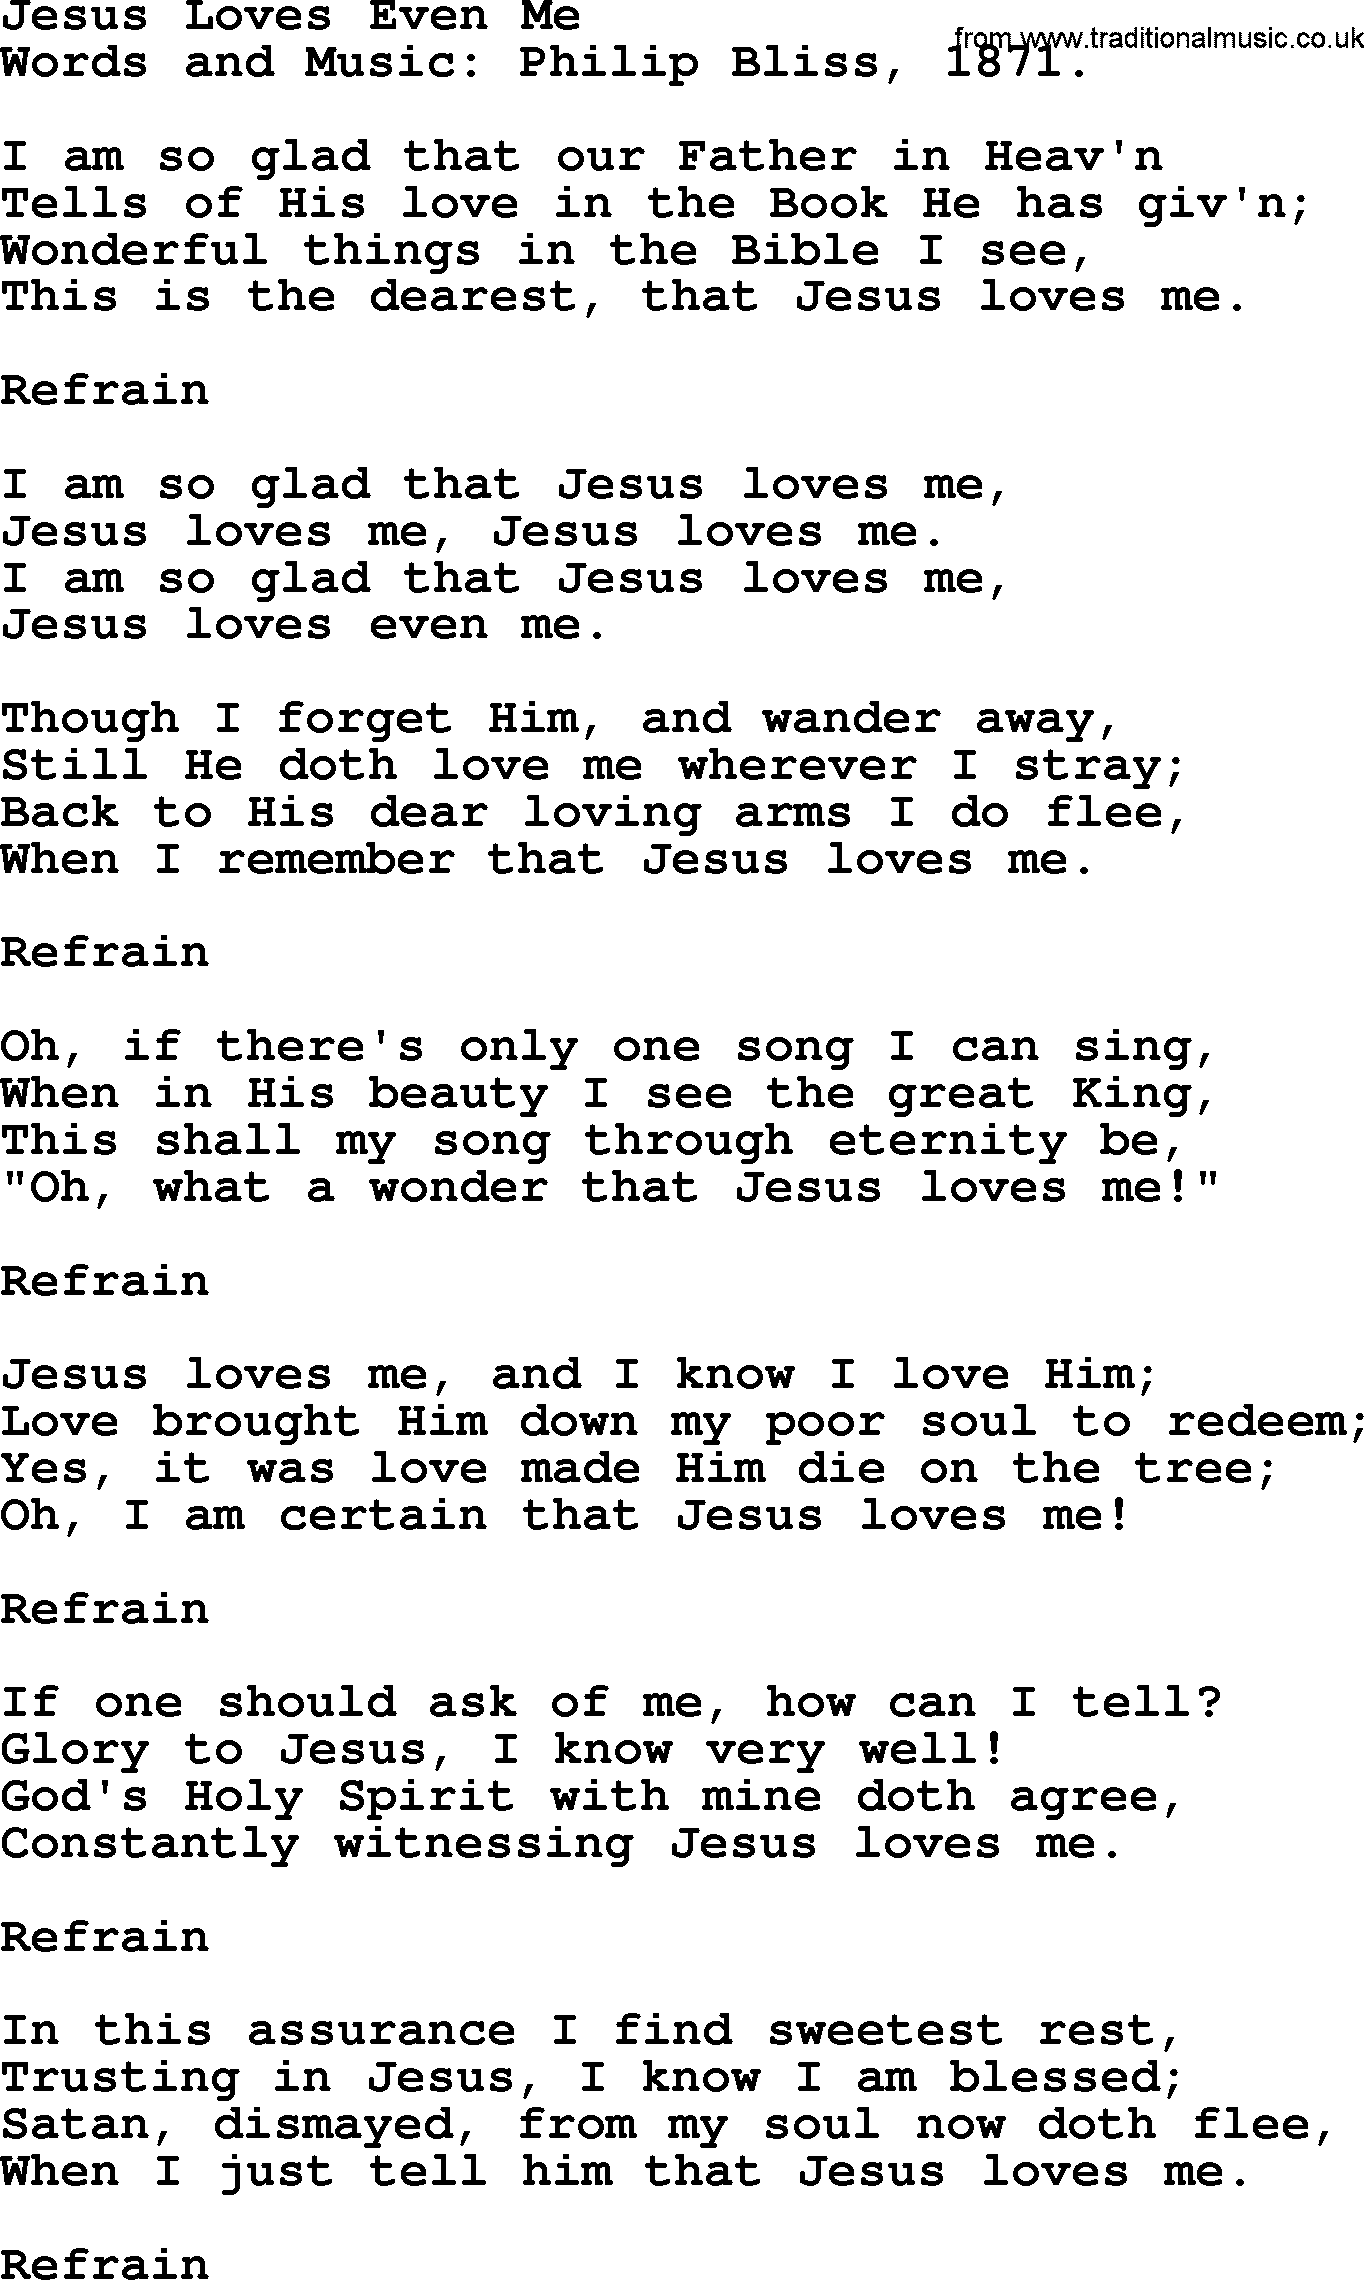 Philip Bliss Song: Jesus Loves Even Me, lyrics